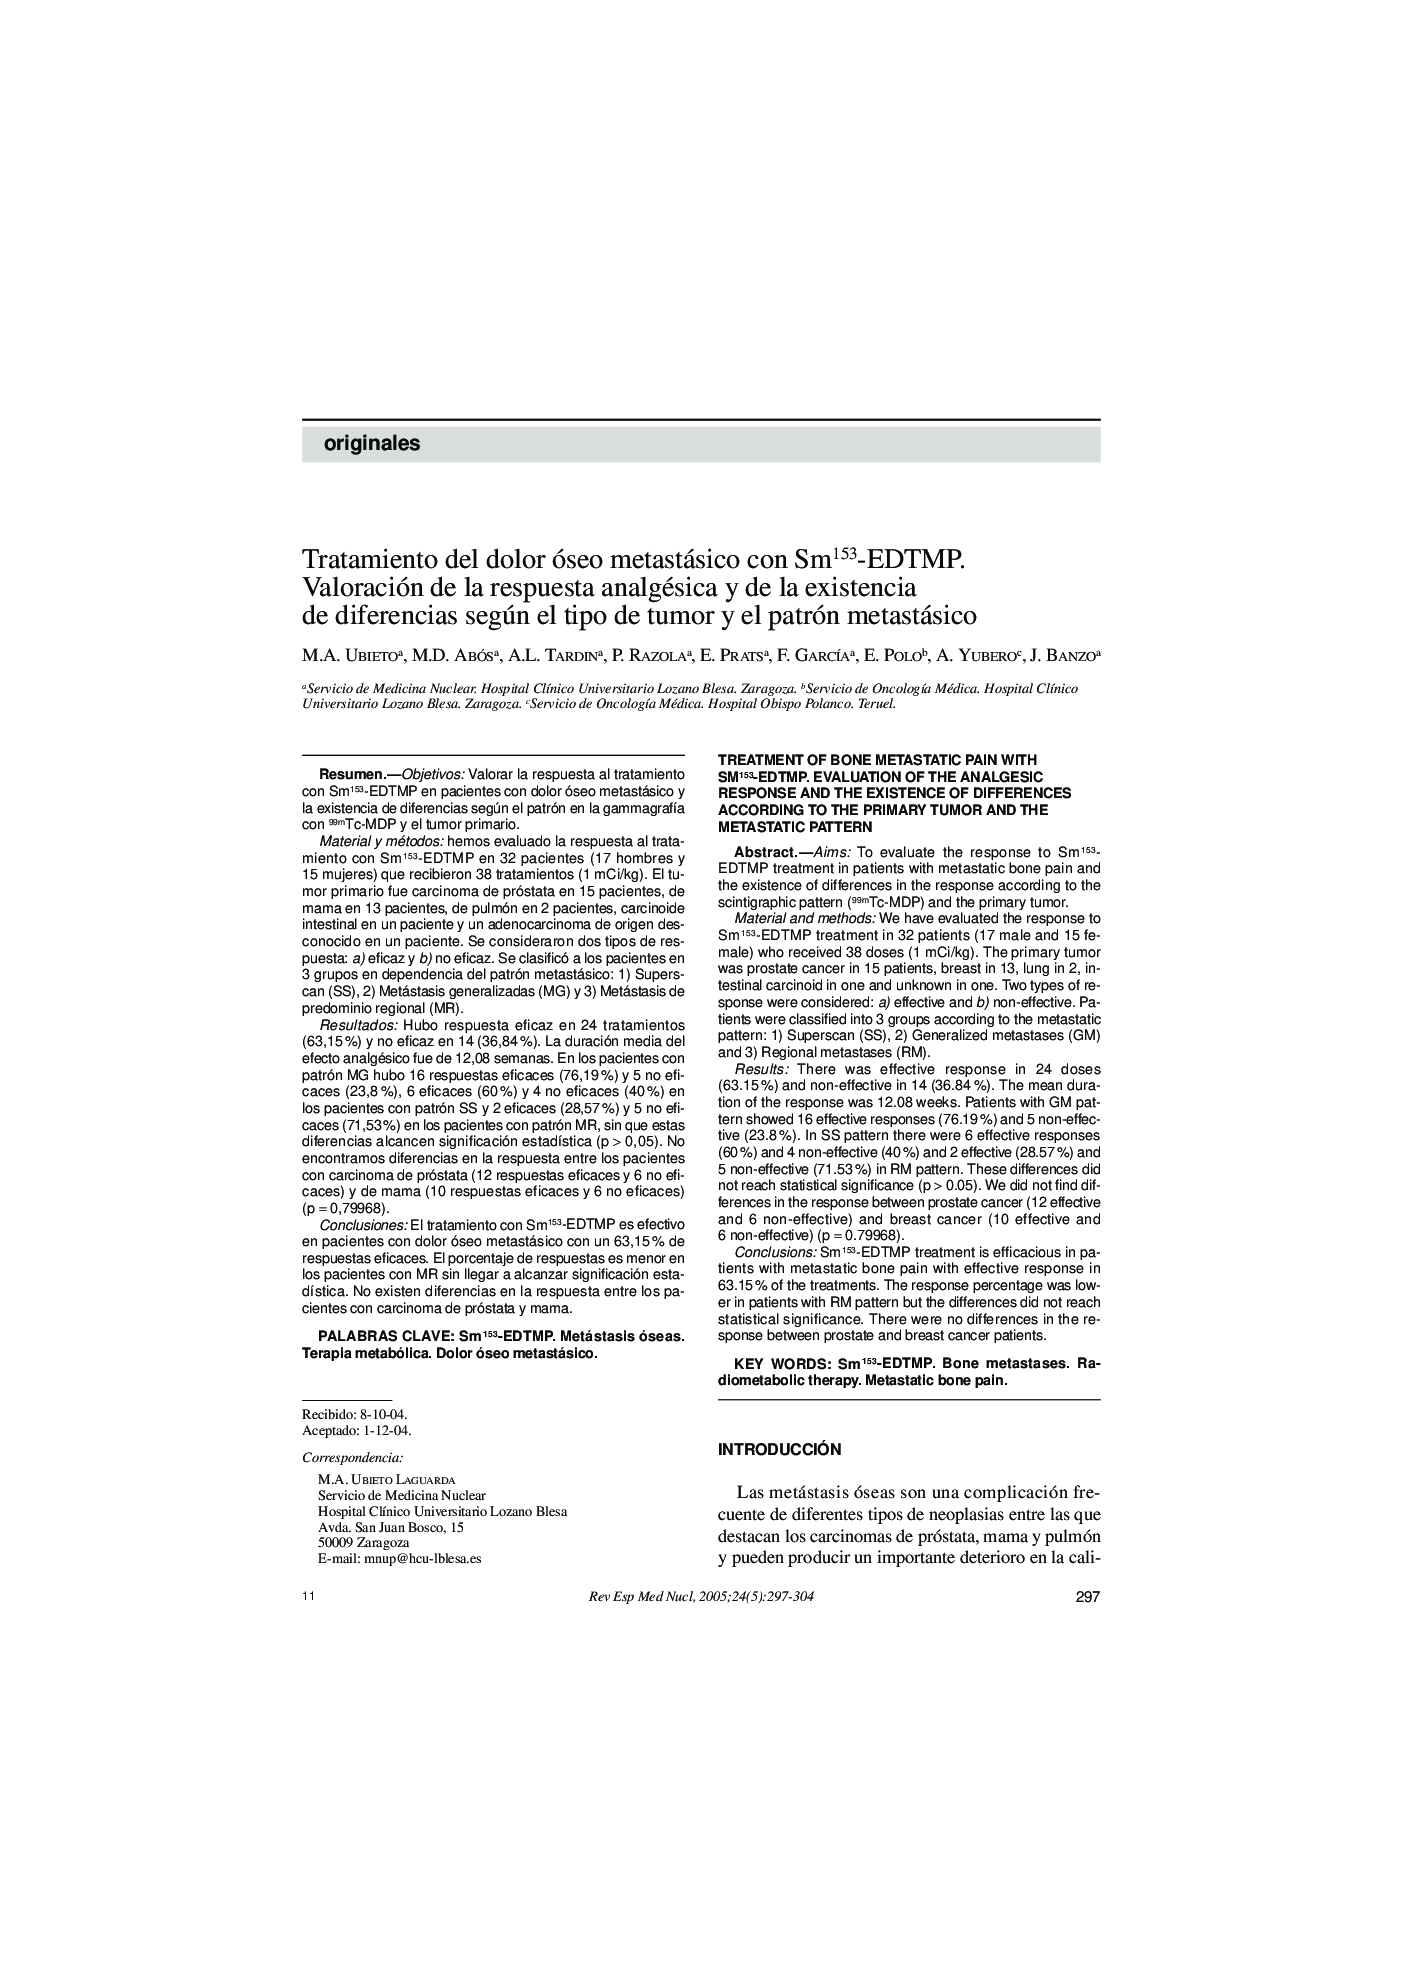 Tratamiento del dolor óseo metastásico con Sm153-EDTMP. Valoración de la respuesta analgésica y de la existencia de diferencias según el tipo de tumor y el patrón metastásico